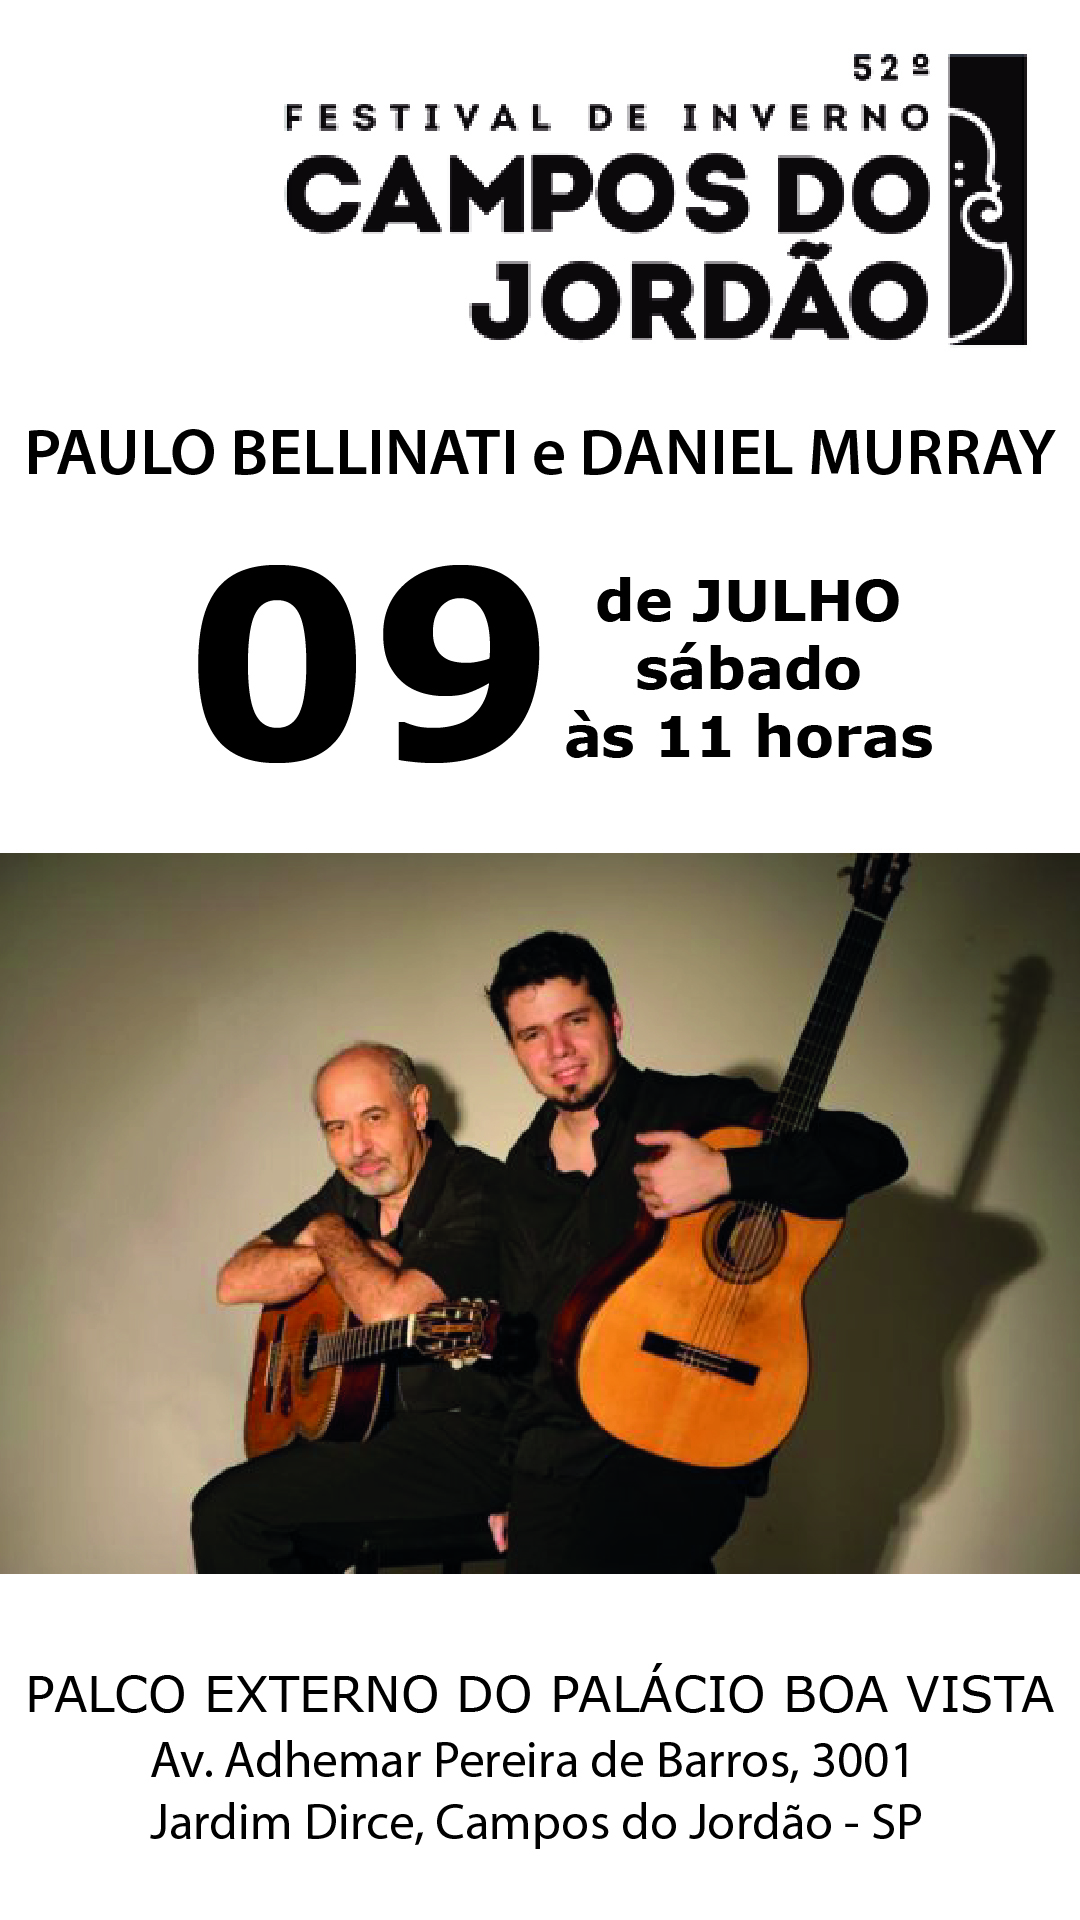 Paulo Bellinati e Daniel Murray